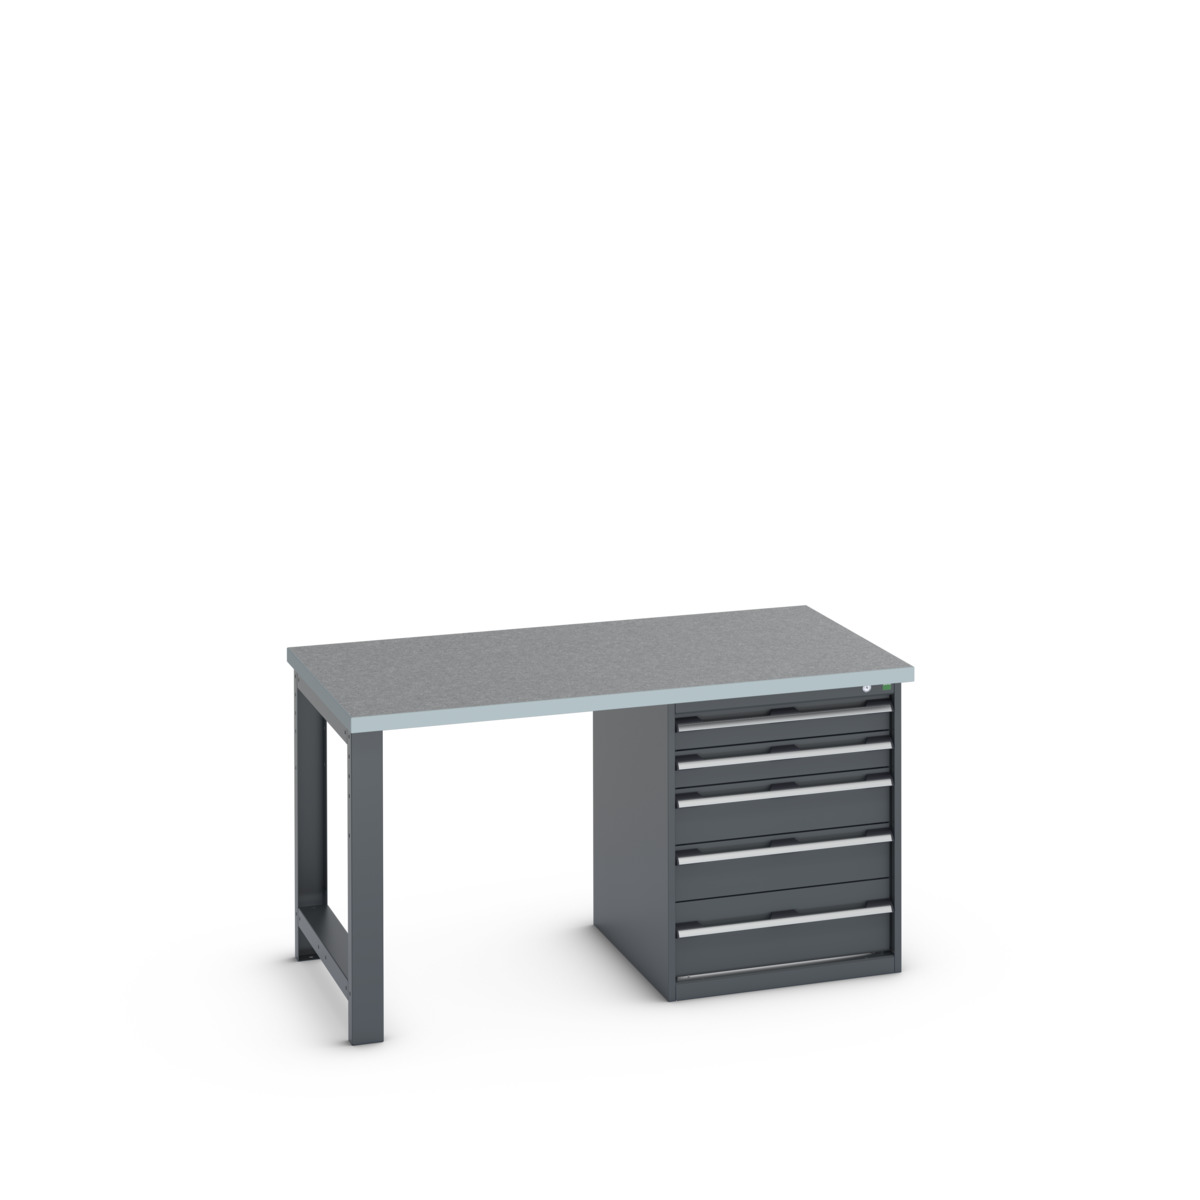 41004110.77V - cubio pedestal bench (lino)